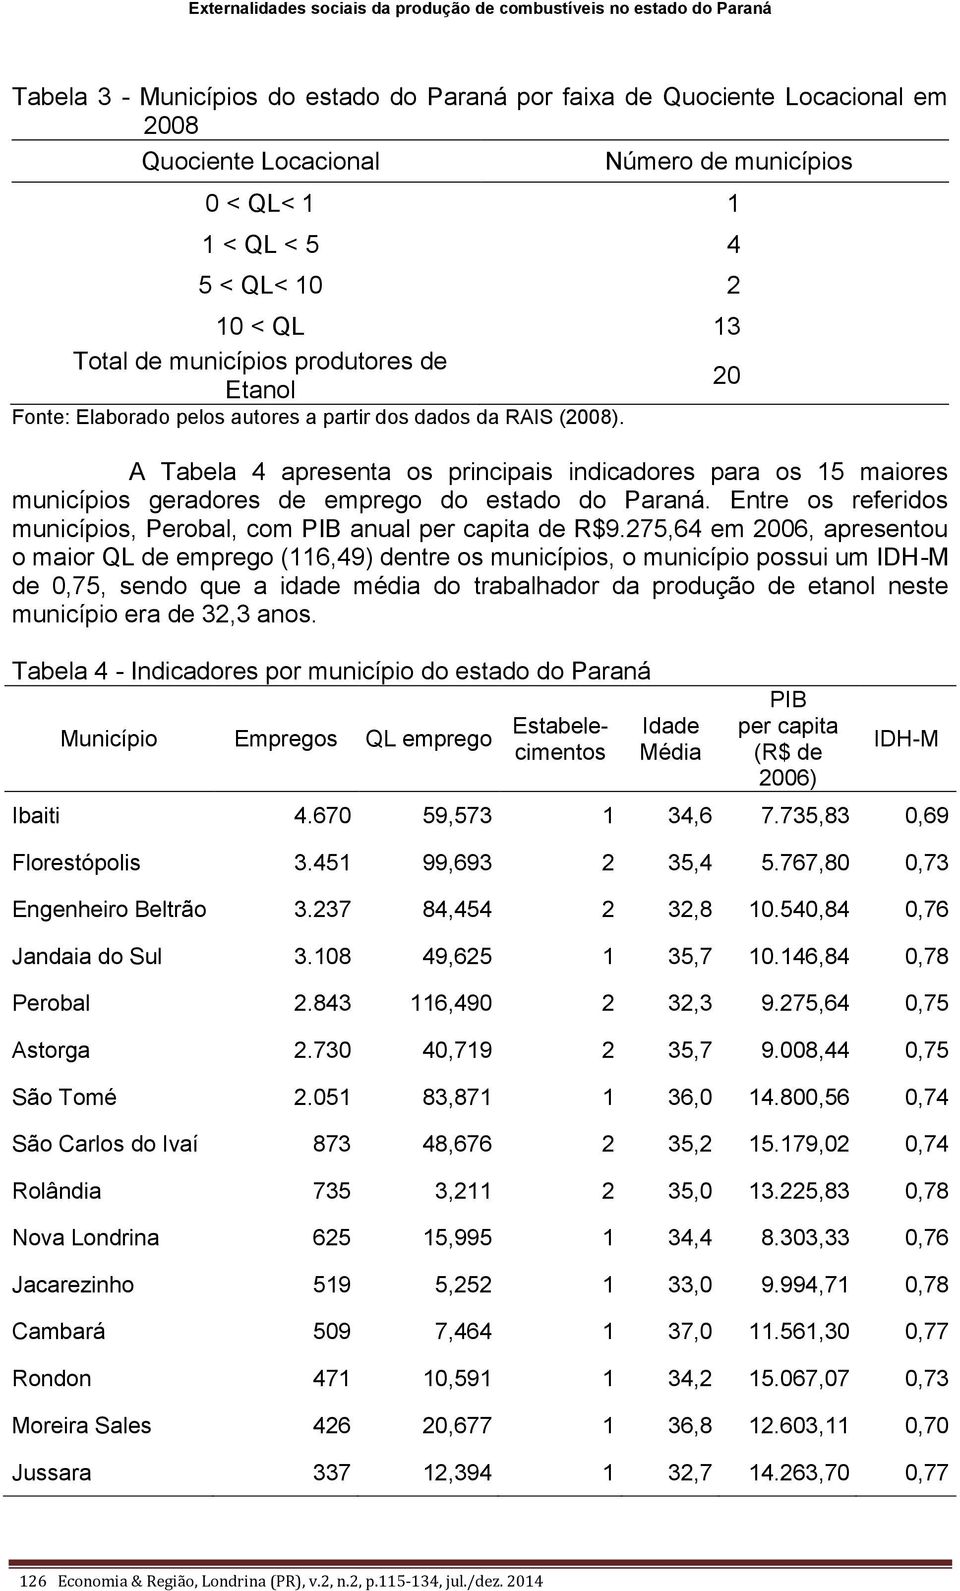 A Tabela 4 apresenta os principais indicadores para os 15 maiores municípios geradores de emprego do estado do Paraná. Entre os referidos municípios, Perobal, com PIB anual per capita de R$9.